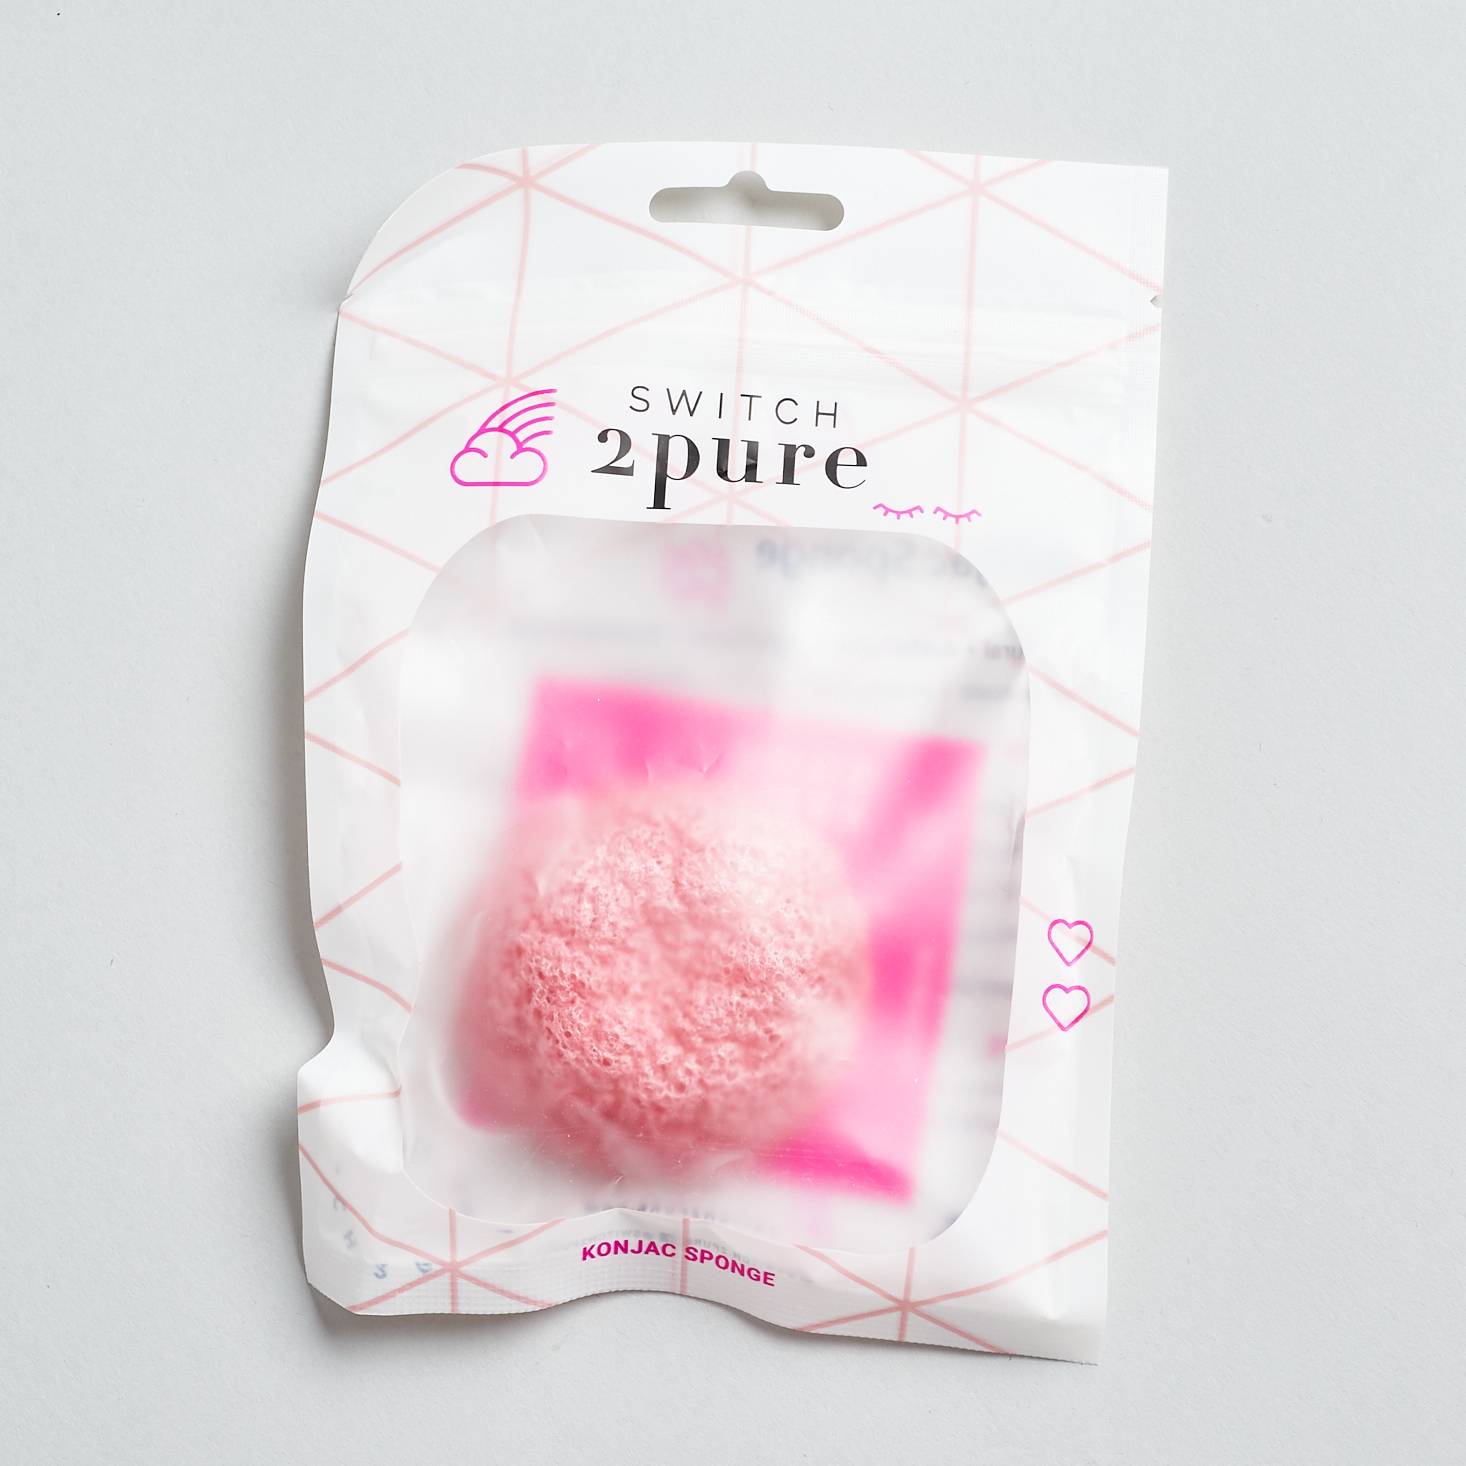 Switch 2 Pure Rose Konjac Sponge in package